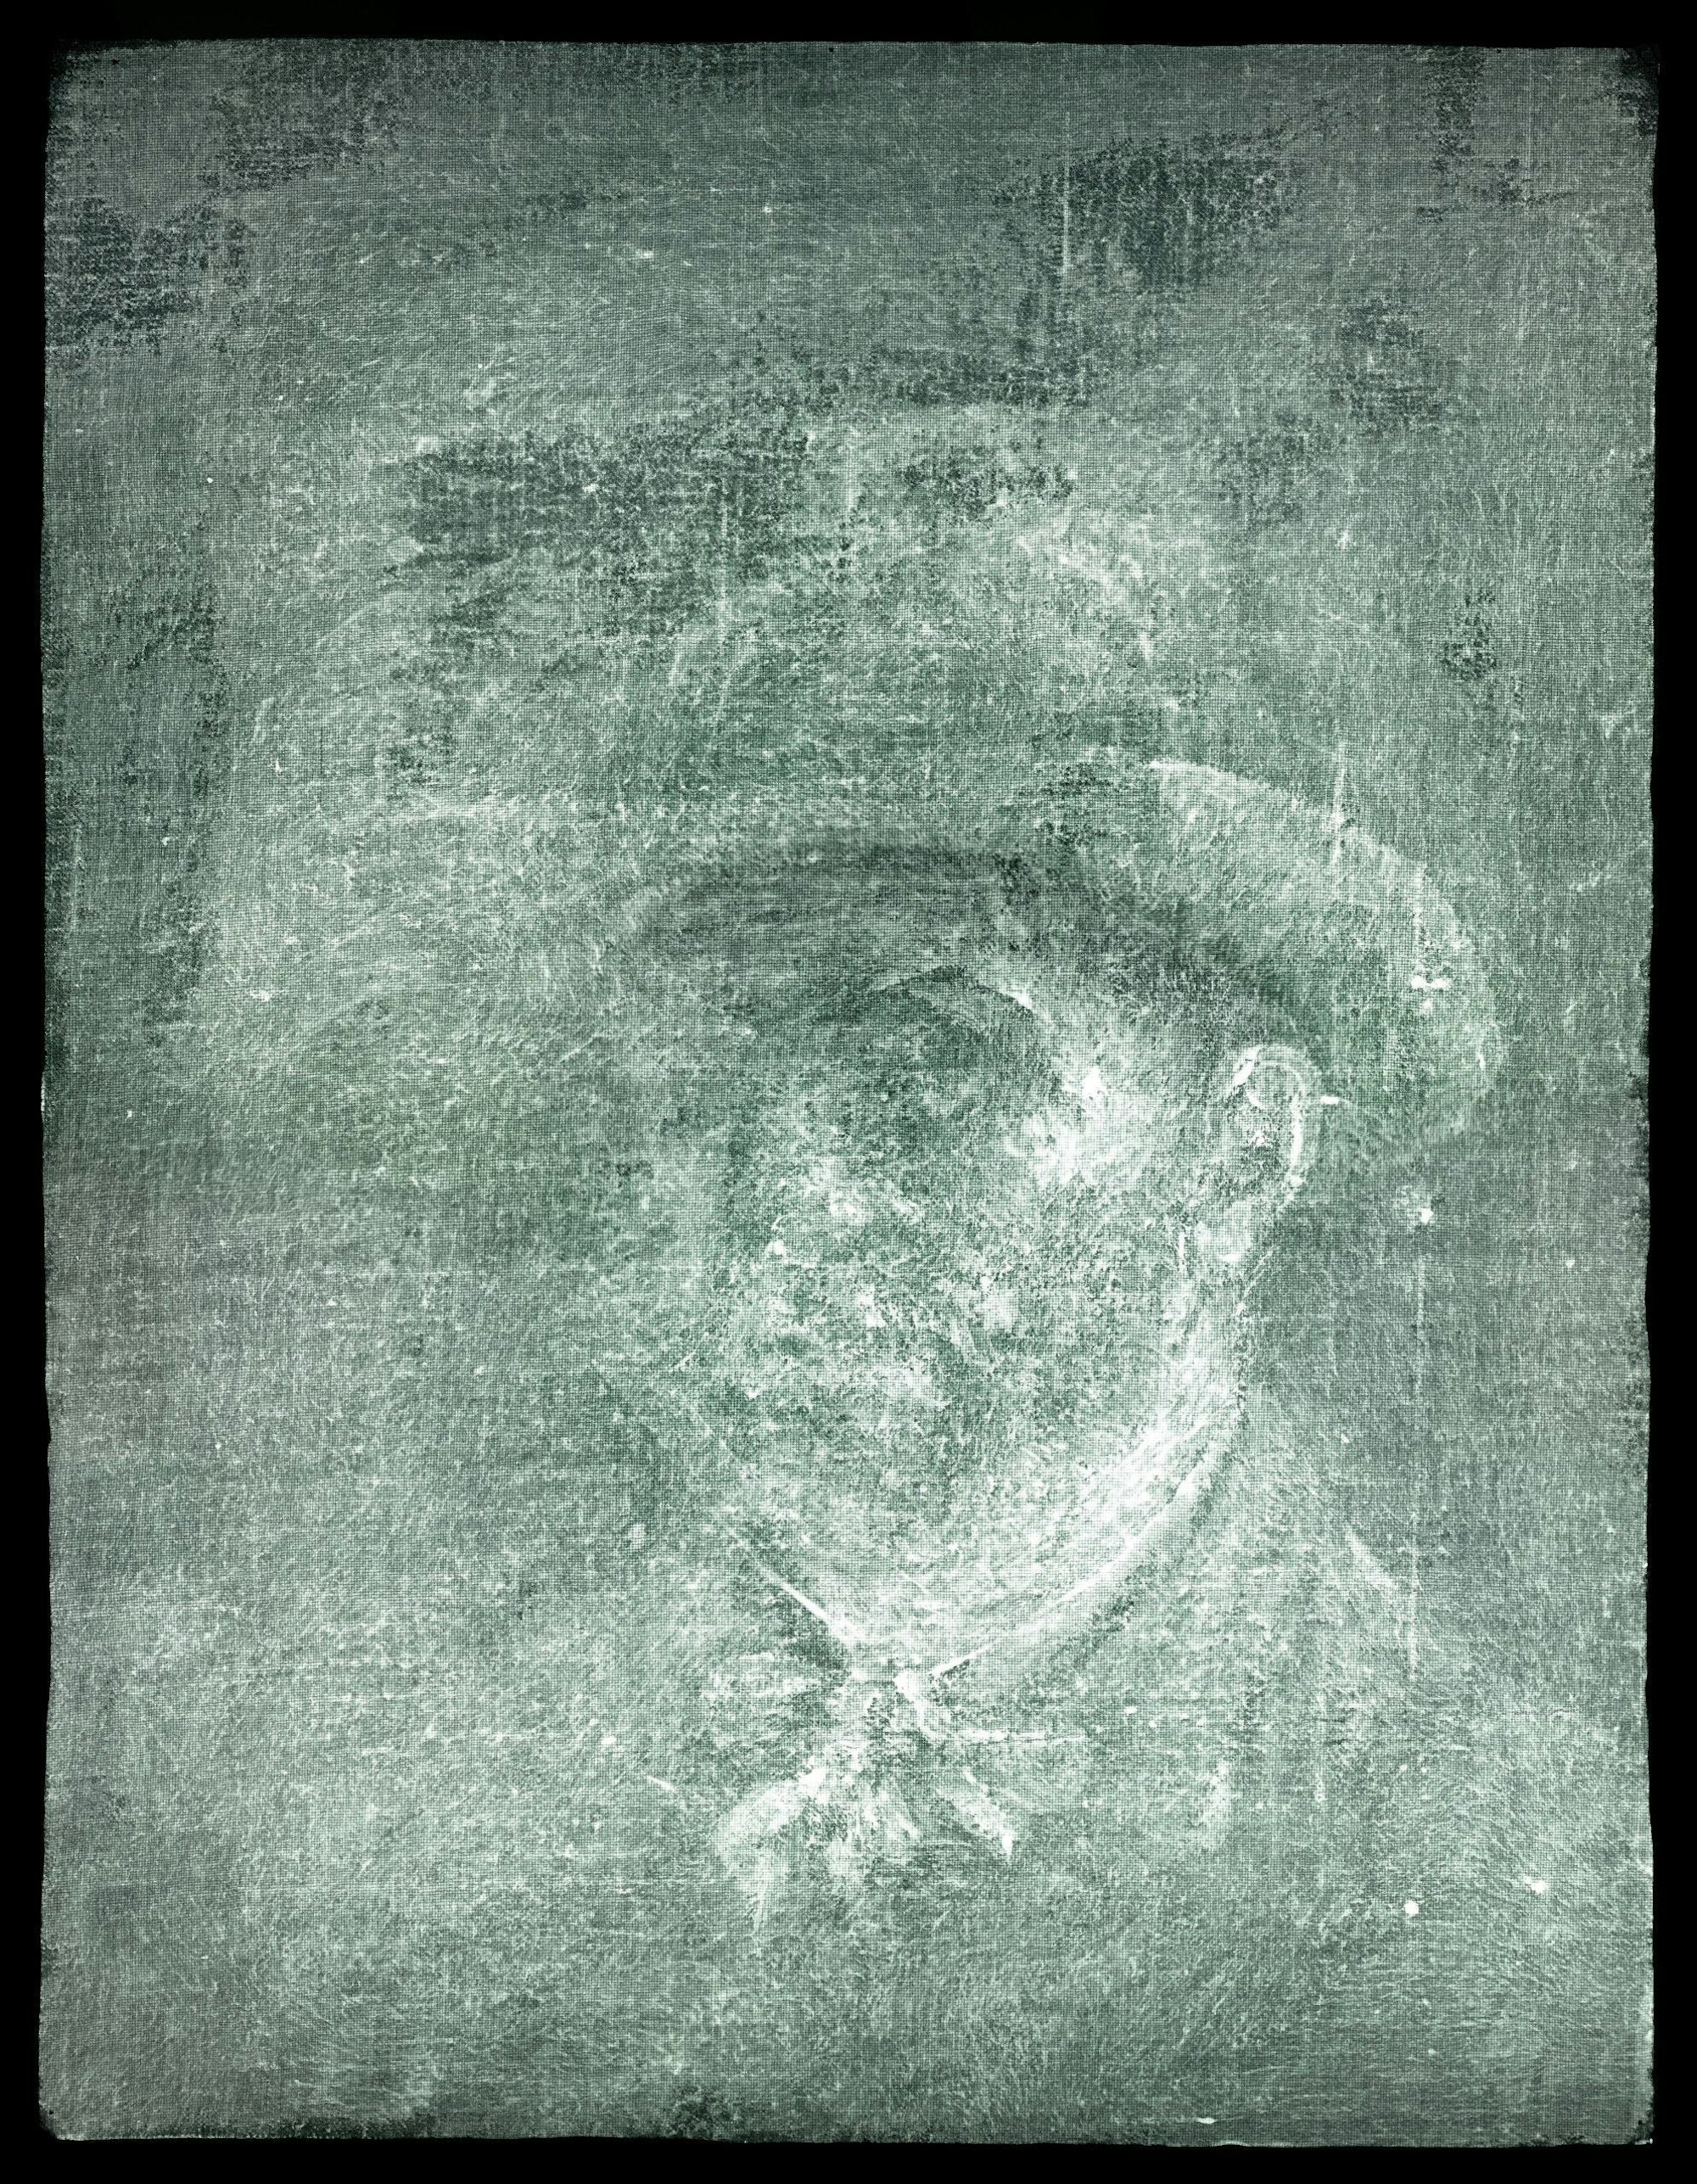 Dieses bis dahin völlig unbekannte Selbstporträt von van Gogh kam bei der Röntgenstrahl-Untersuchung zum Vorschein.